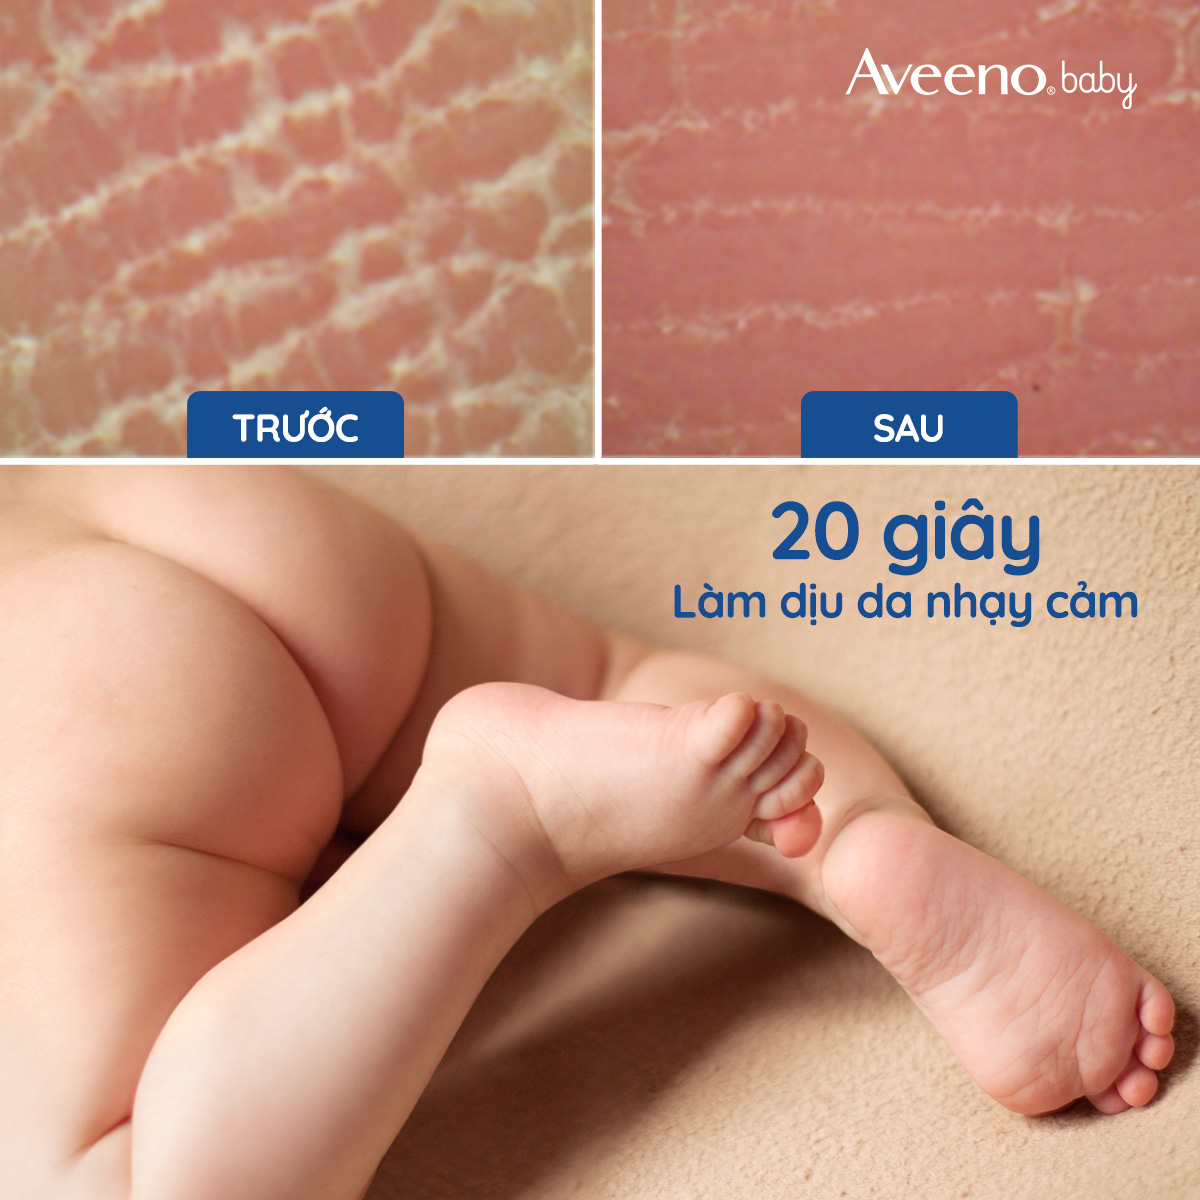 Kem dưỡng Aveeno Baby cho da khô và nhạy cảm 227g - 101016747